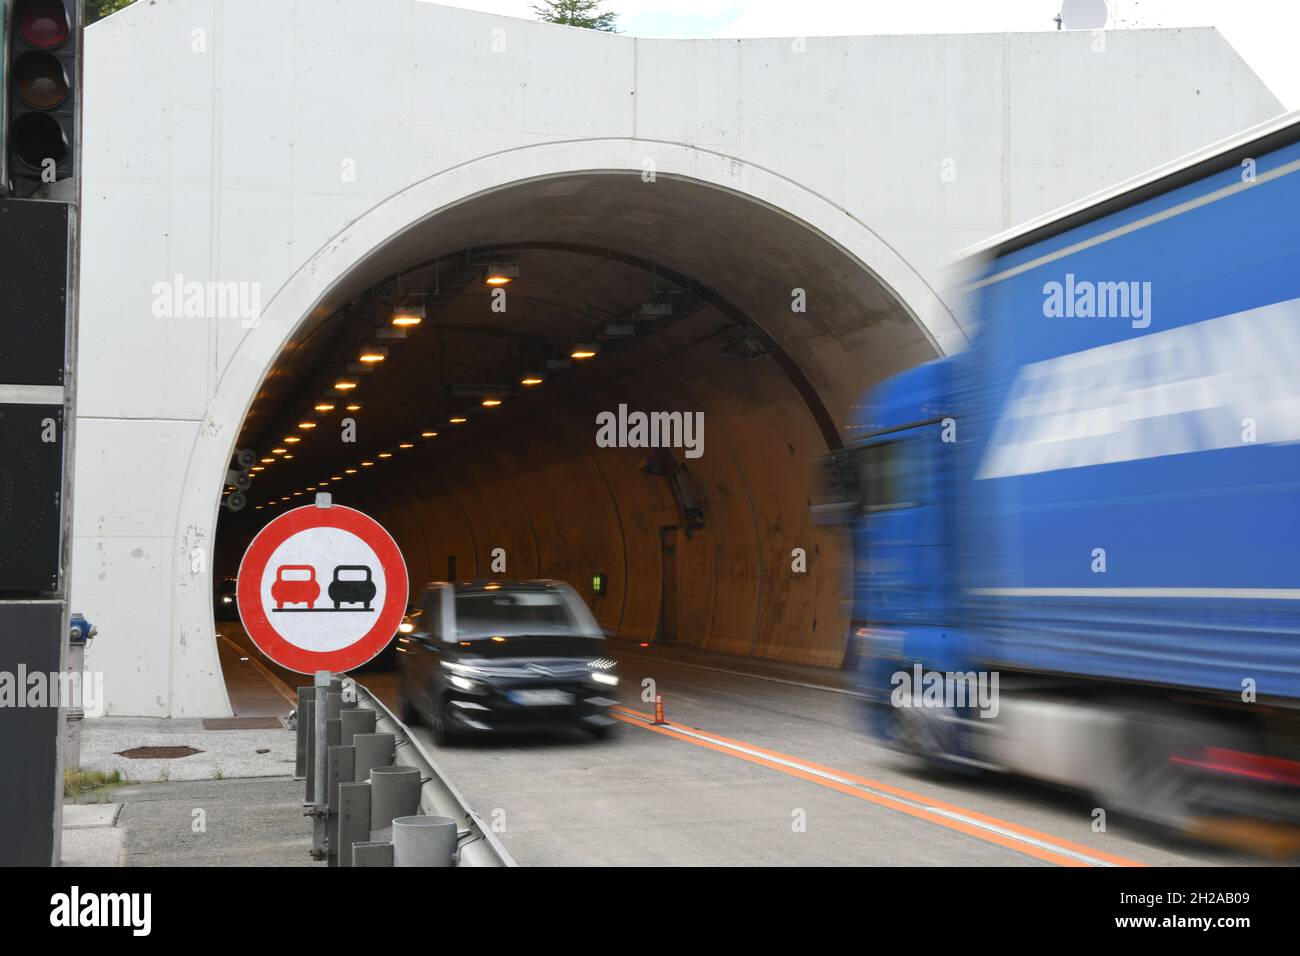 Tunnel-Einfahrt auf der Pyhrnautobahn A9, Oberösterreich, Österreich - Tunnel entrance on the Pyhrnautobahn A9, Upper Austria, Austria Stock Photo